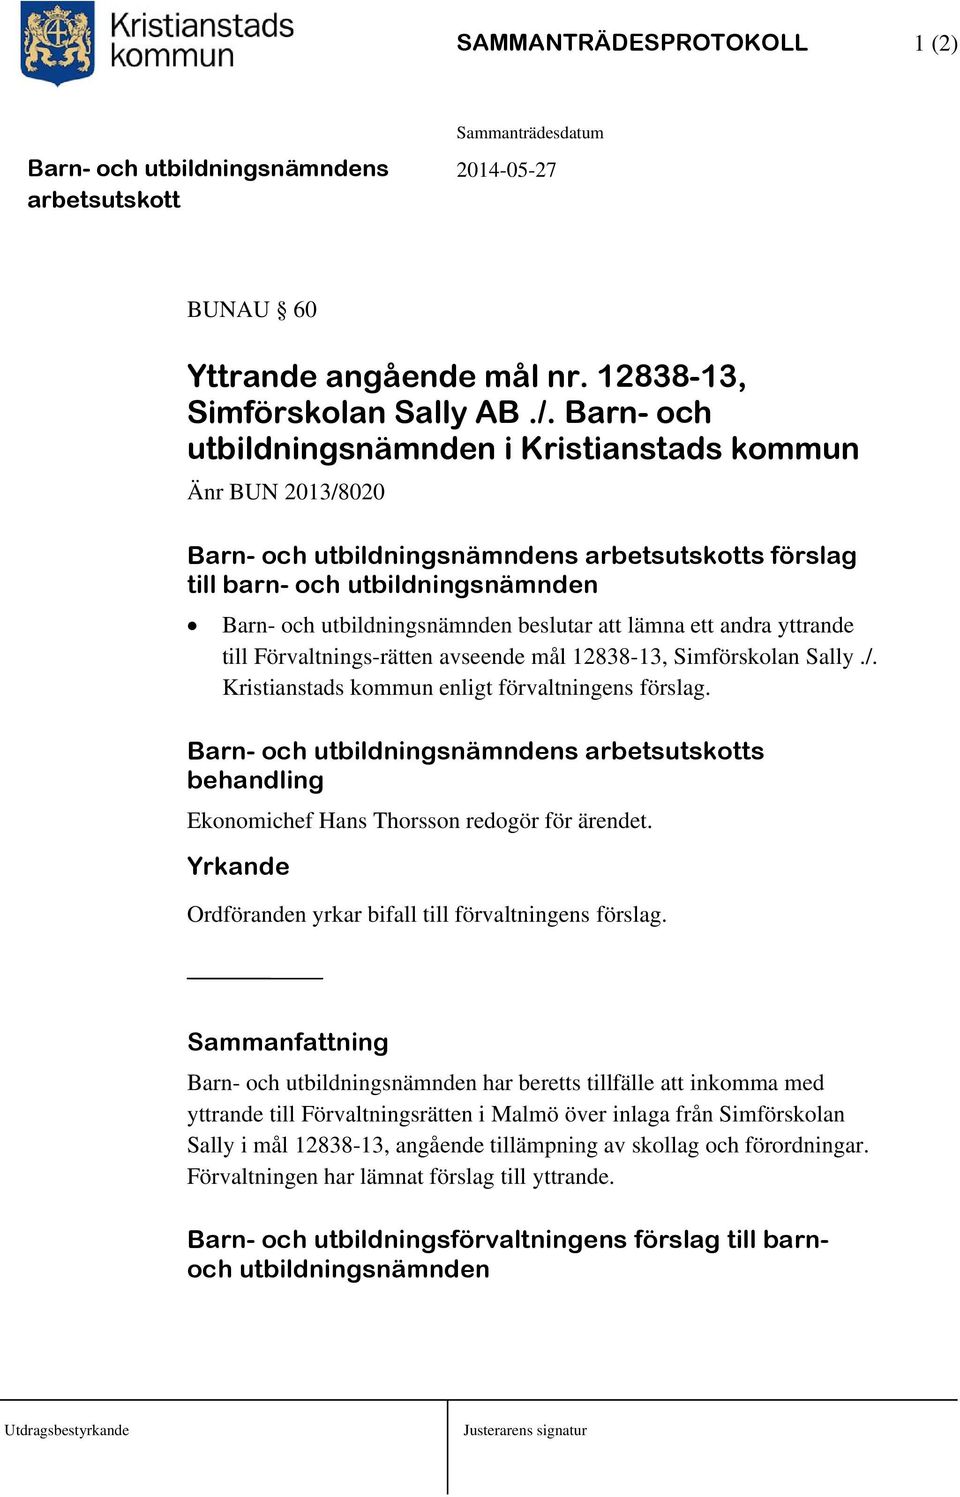 Förvaltnings-rätten avseende mål 12838-13, Simförskolan Sally./. Kristianstads kommun enligt förvaltningens förslag. s behandling Ekonomichef Hans Thorsson redogör för ärendet.